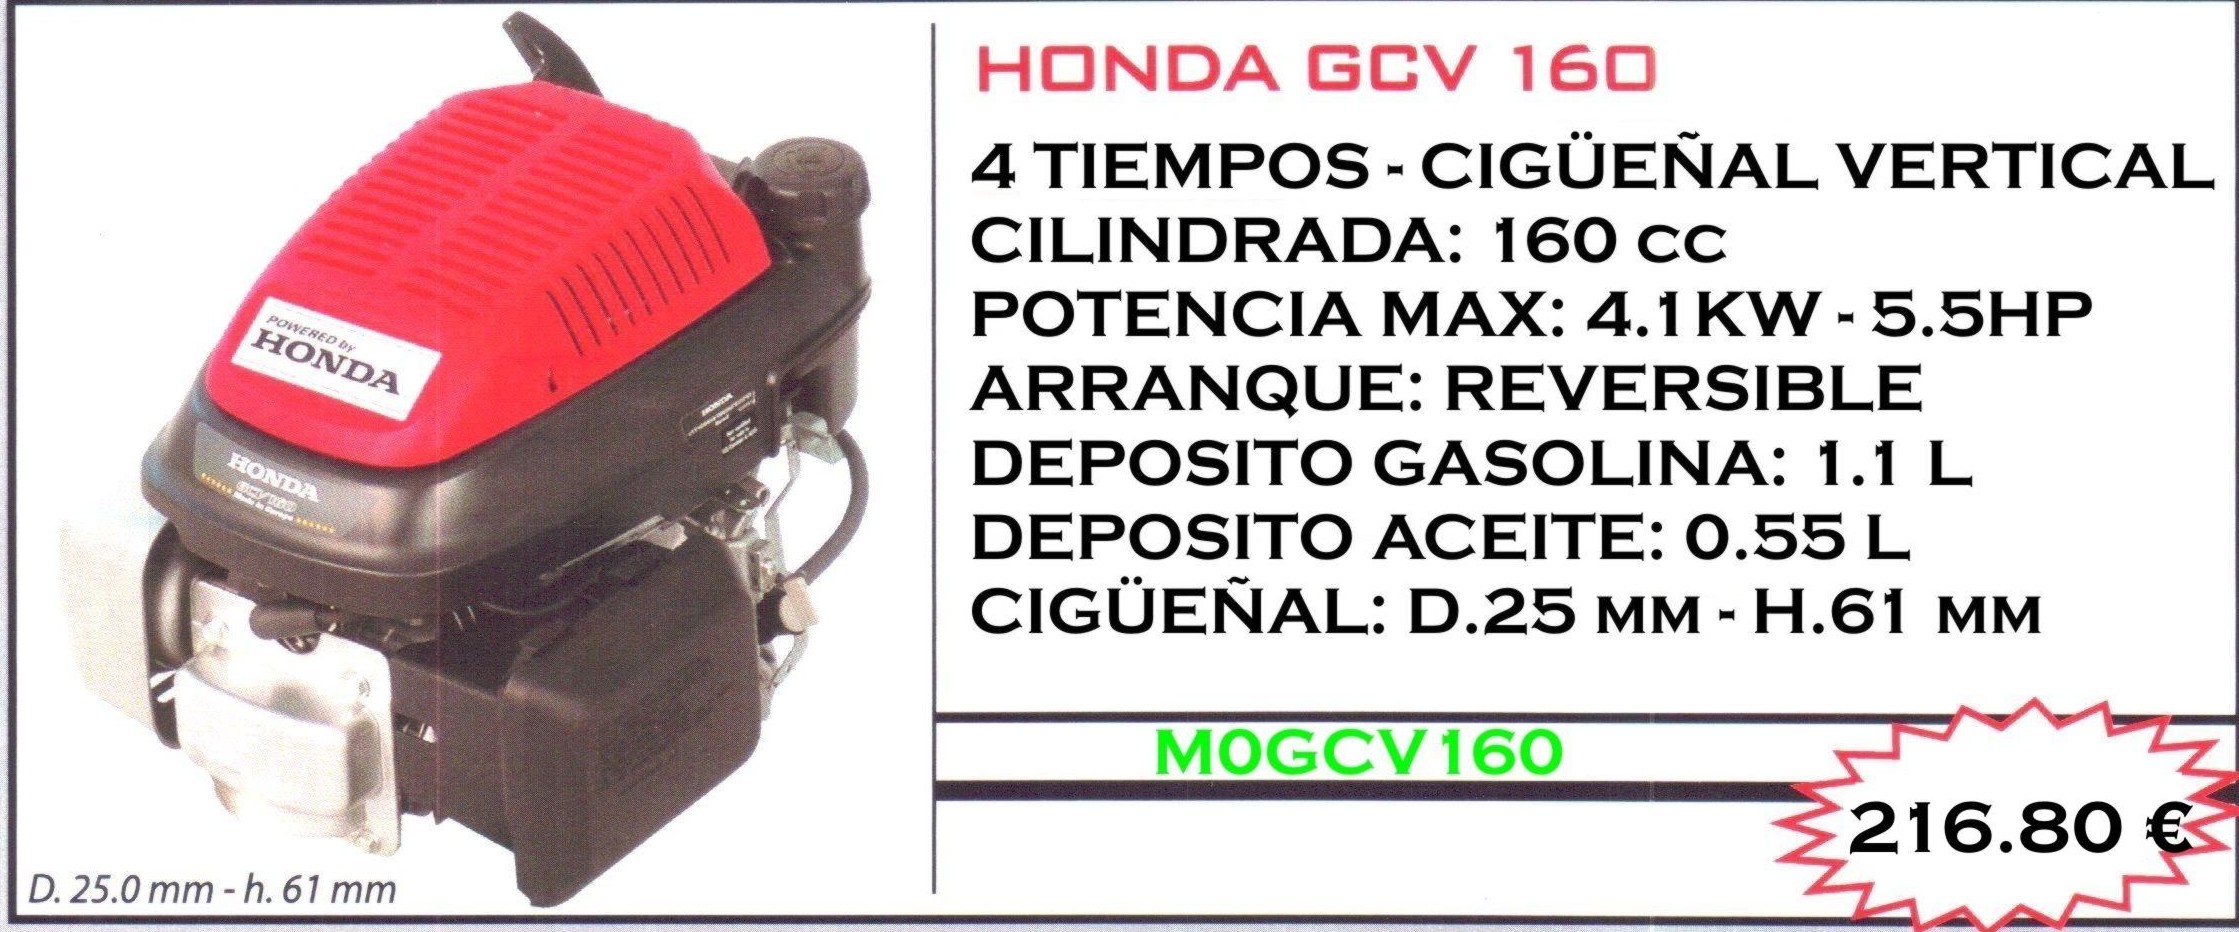 MOTOR HONDA GCV160